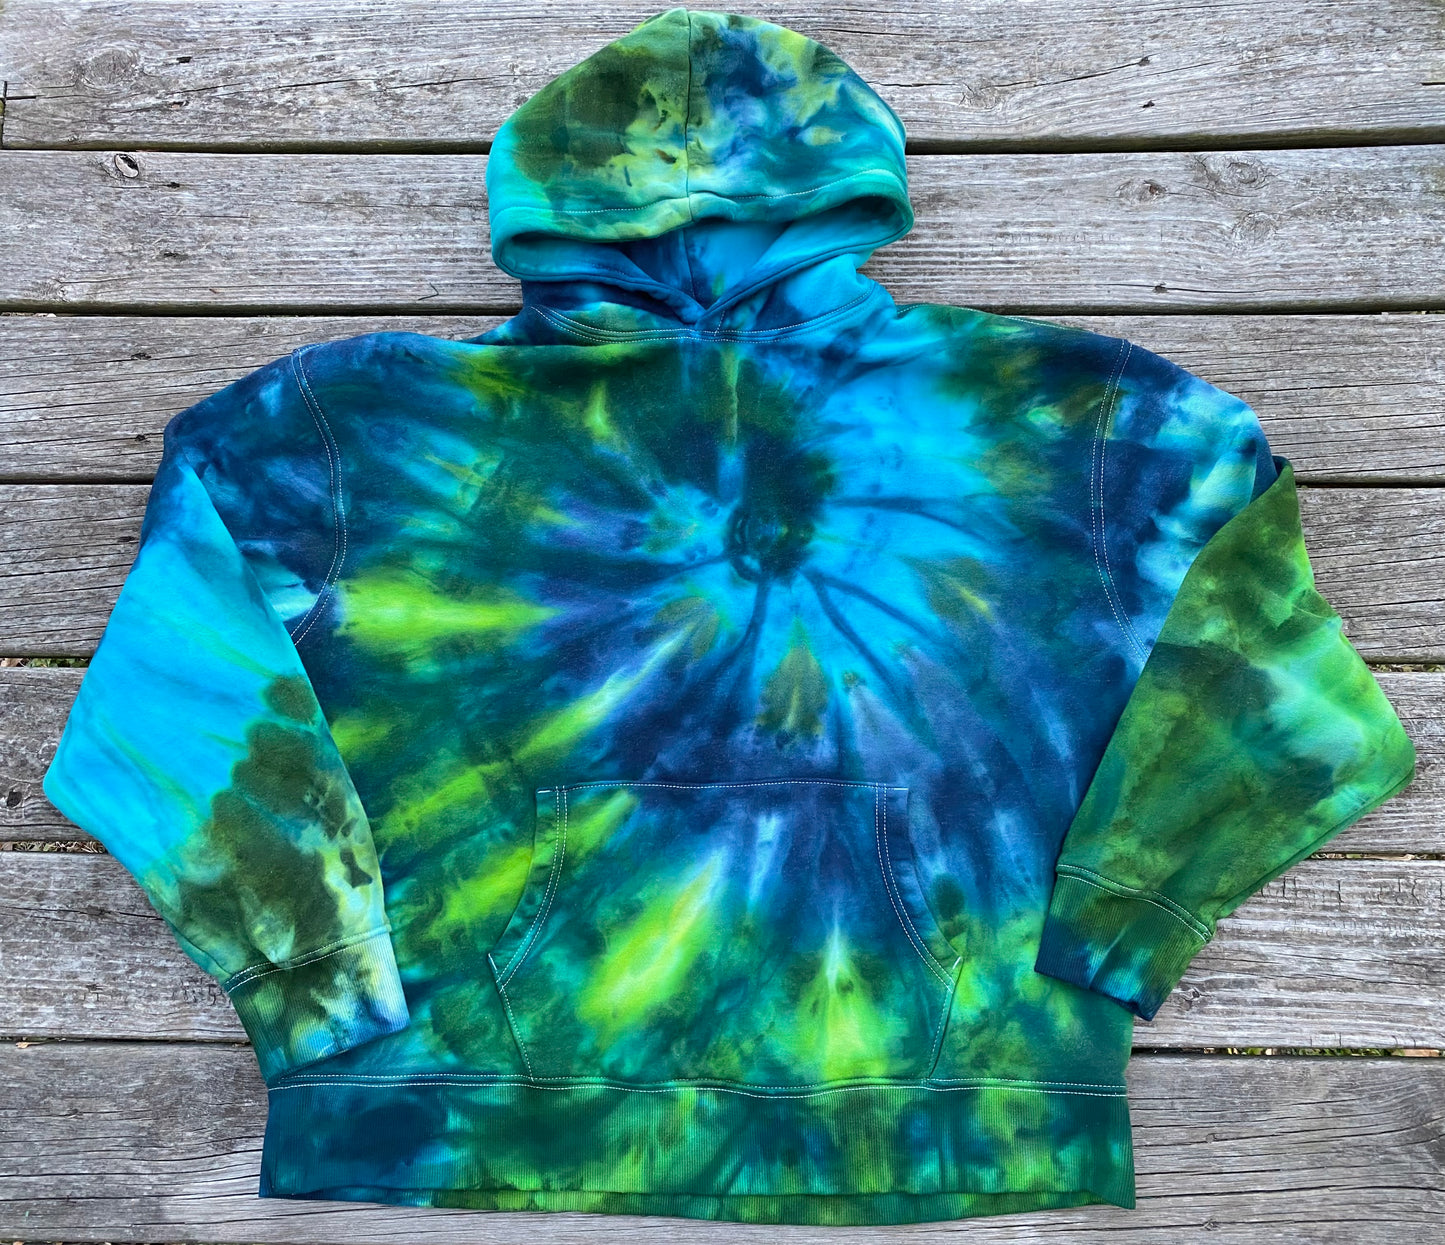 XXXL old navy brand unisex mid-weight hoodie blue greens ice dye spiral